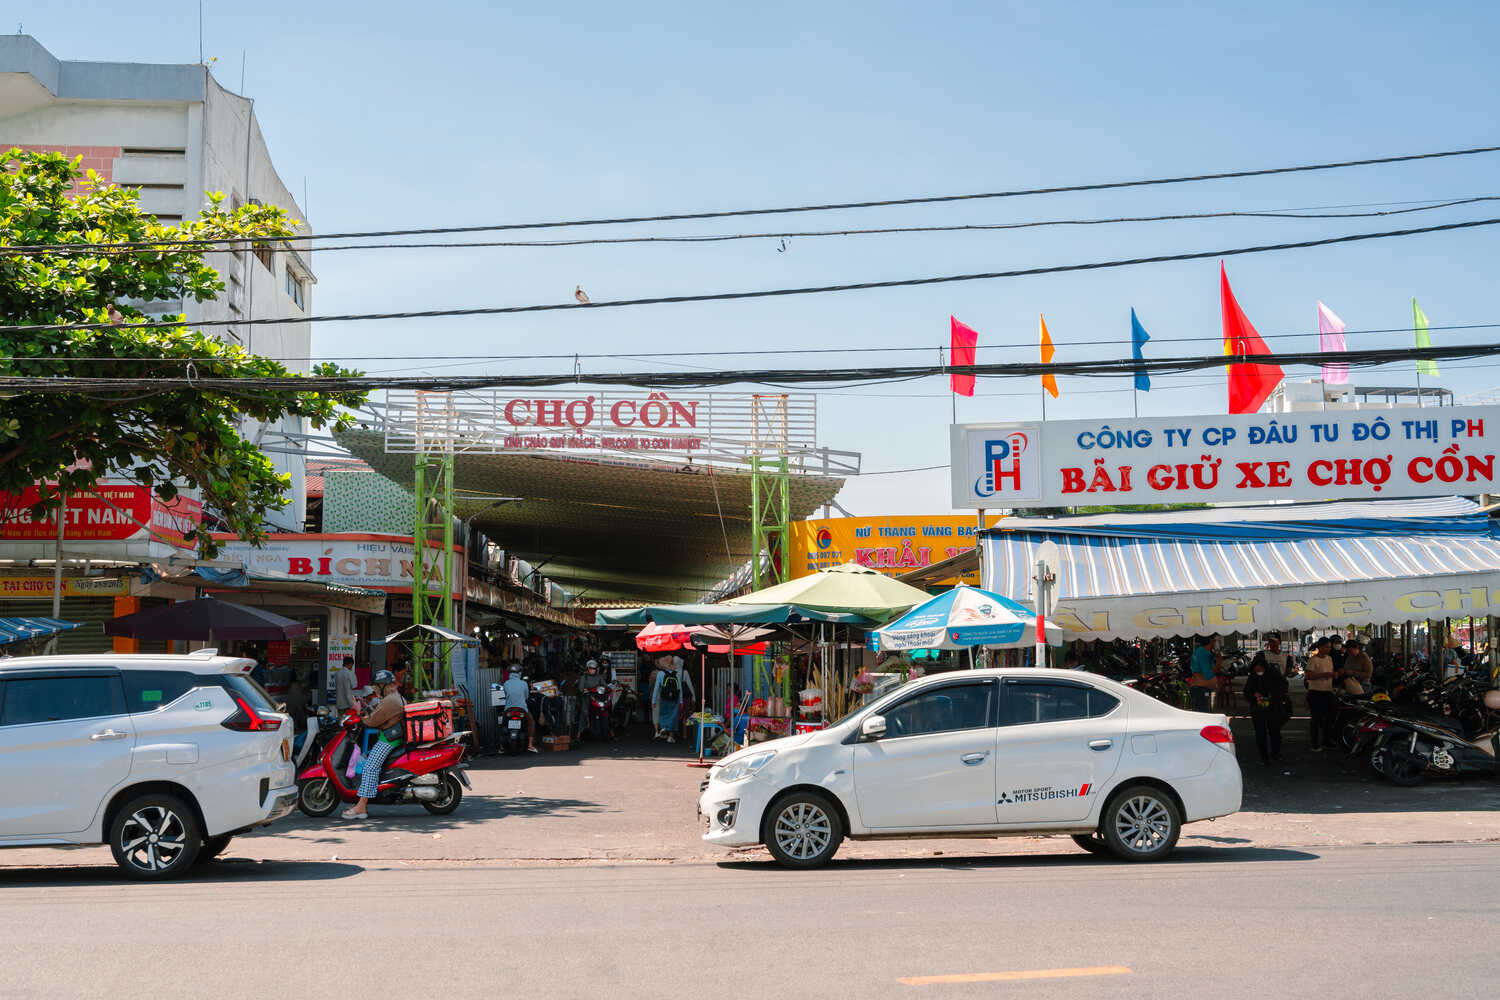 Entrance of the Cho Con Market in Da Nang